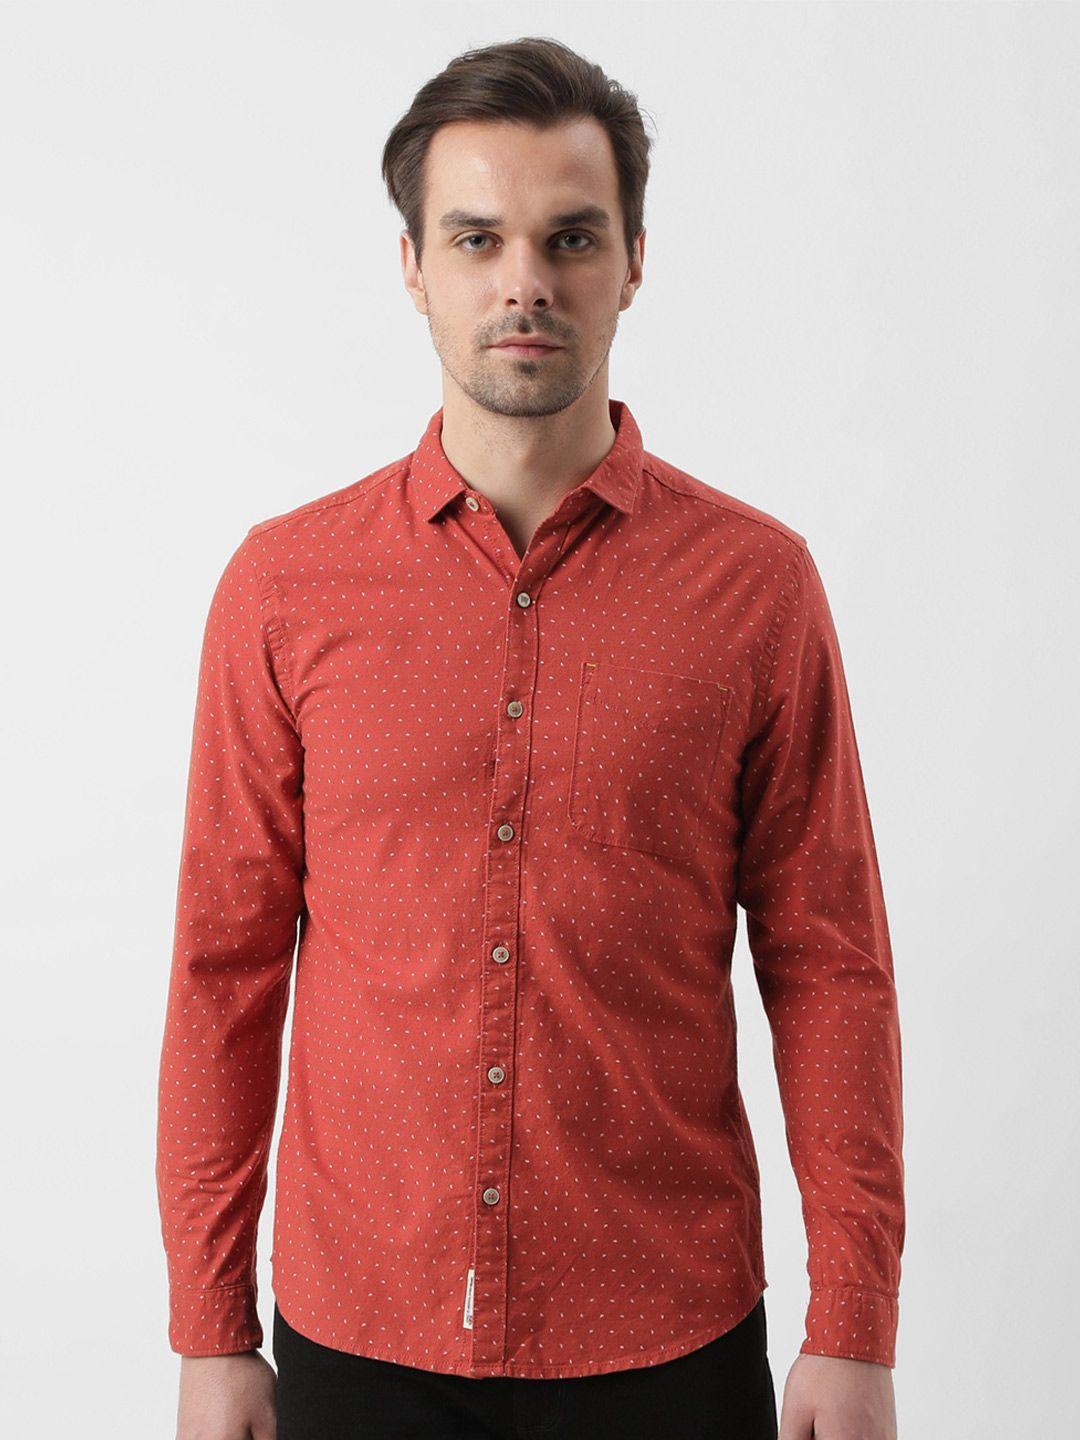 wrangler-micro-ditsy-printed-spread-collar-oxford-cotton-casual-shirt